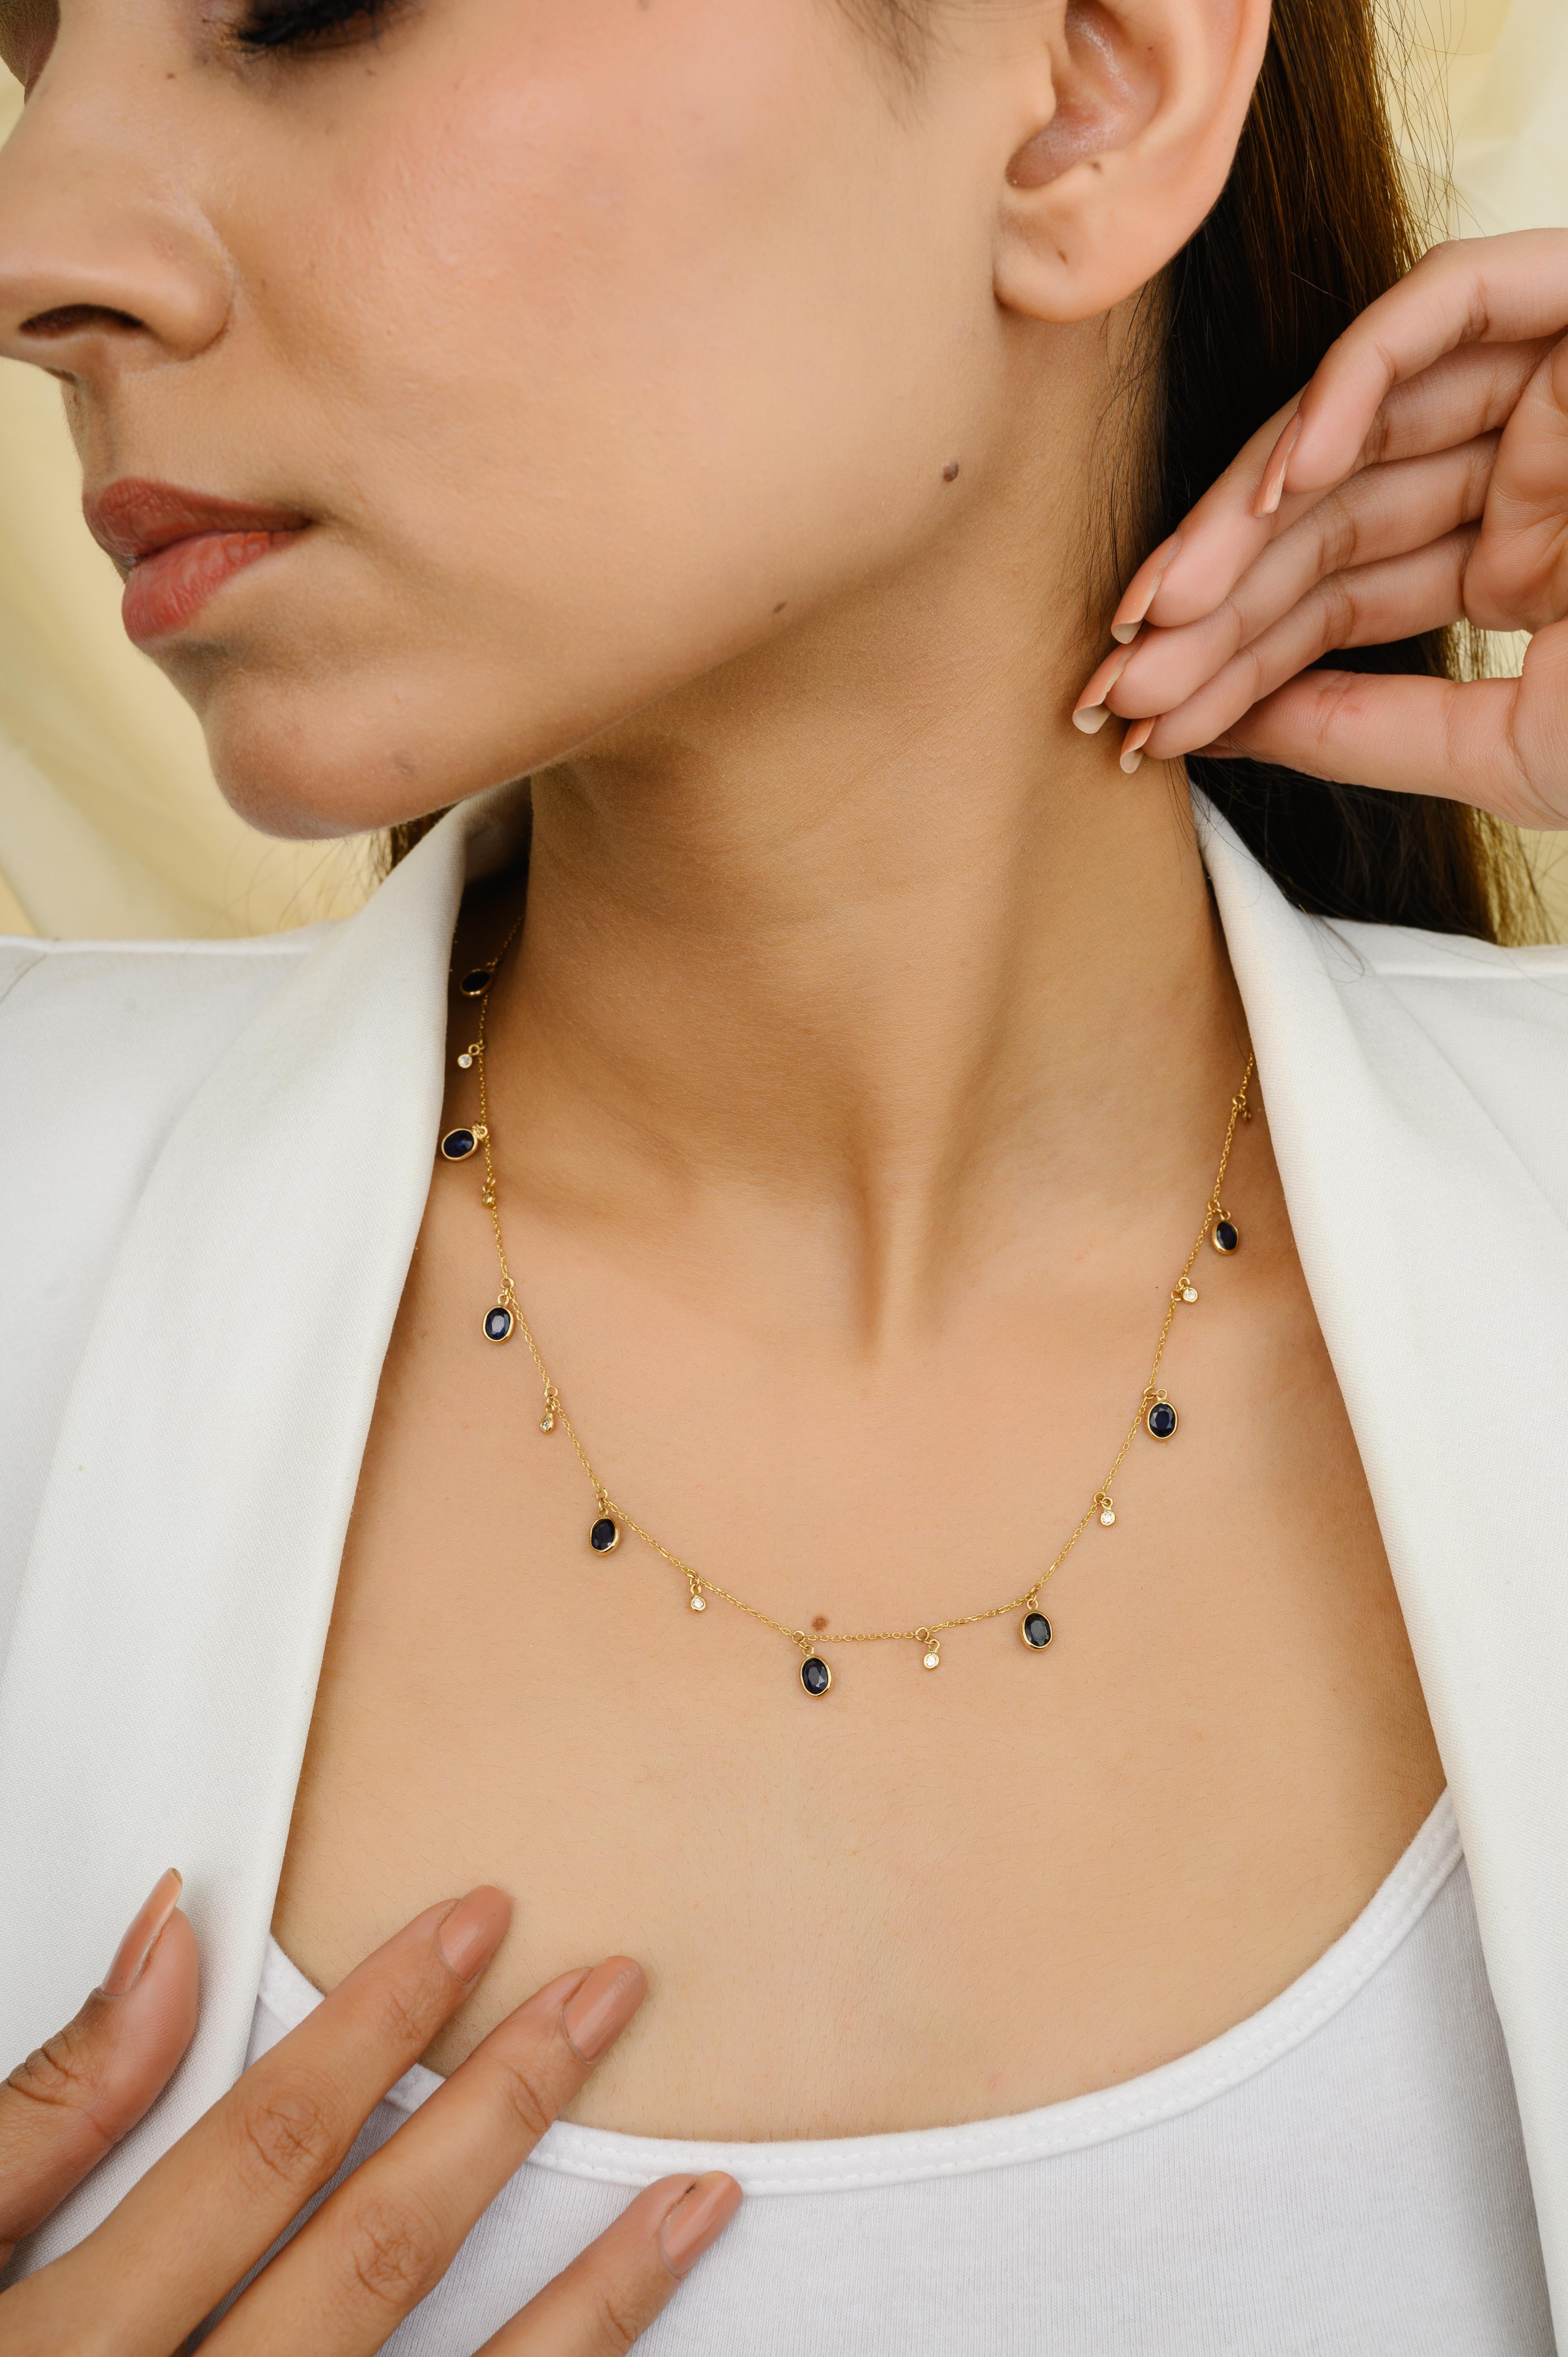 Blauer Saphir und Diamant Charm Layering Necklace aus 18K Gold mit blauem Saphir und Diamanten im Ovalschliff. Dieses atemberaubende Schmuckstück wertet einen Freizeitlook oder ein elegantes Outfit sofort auf. 
Saphir fördert die Konzentration und